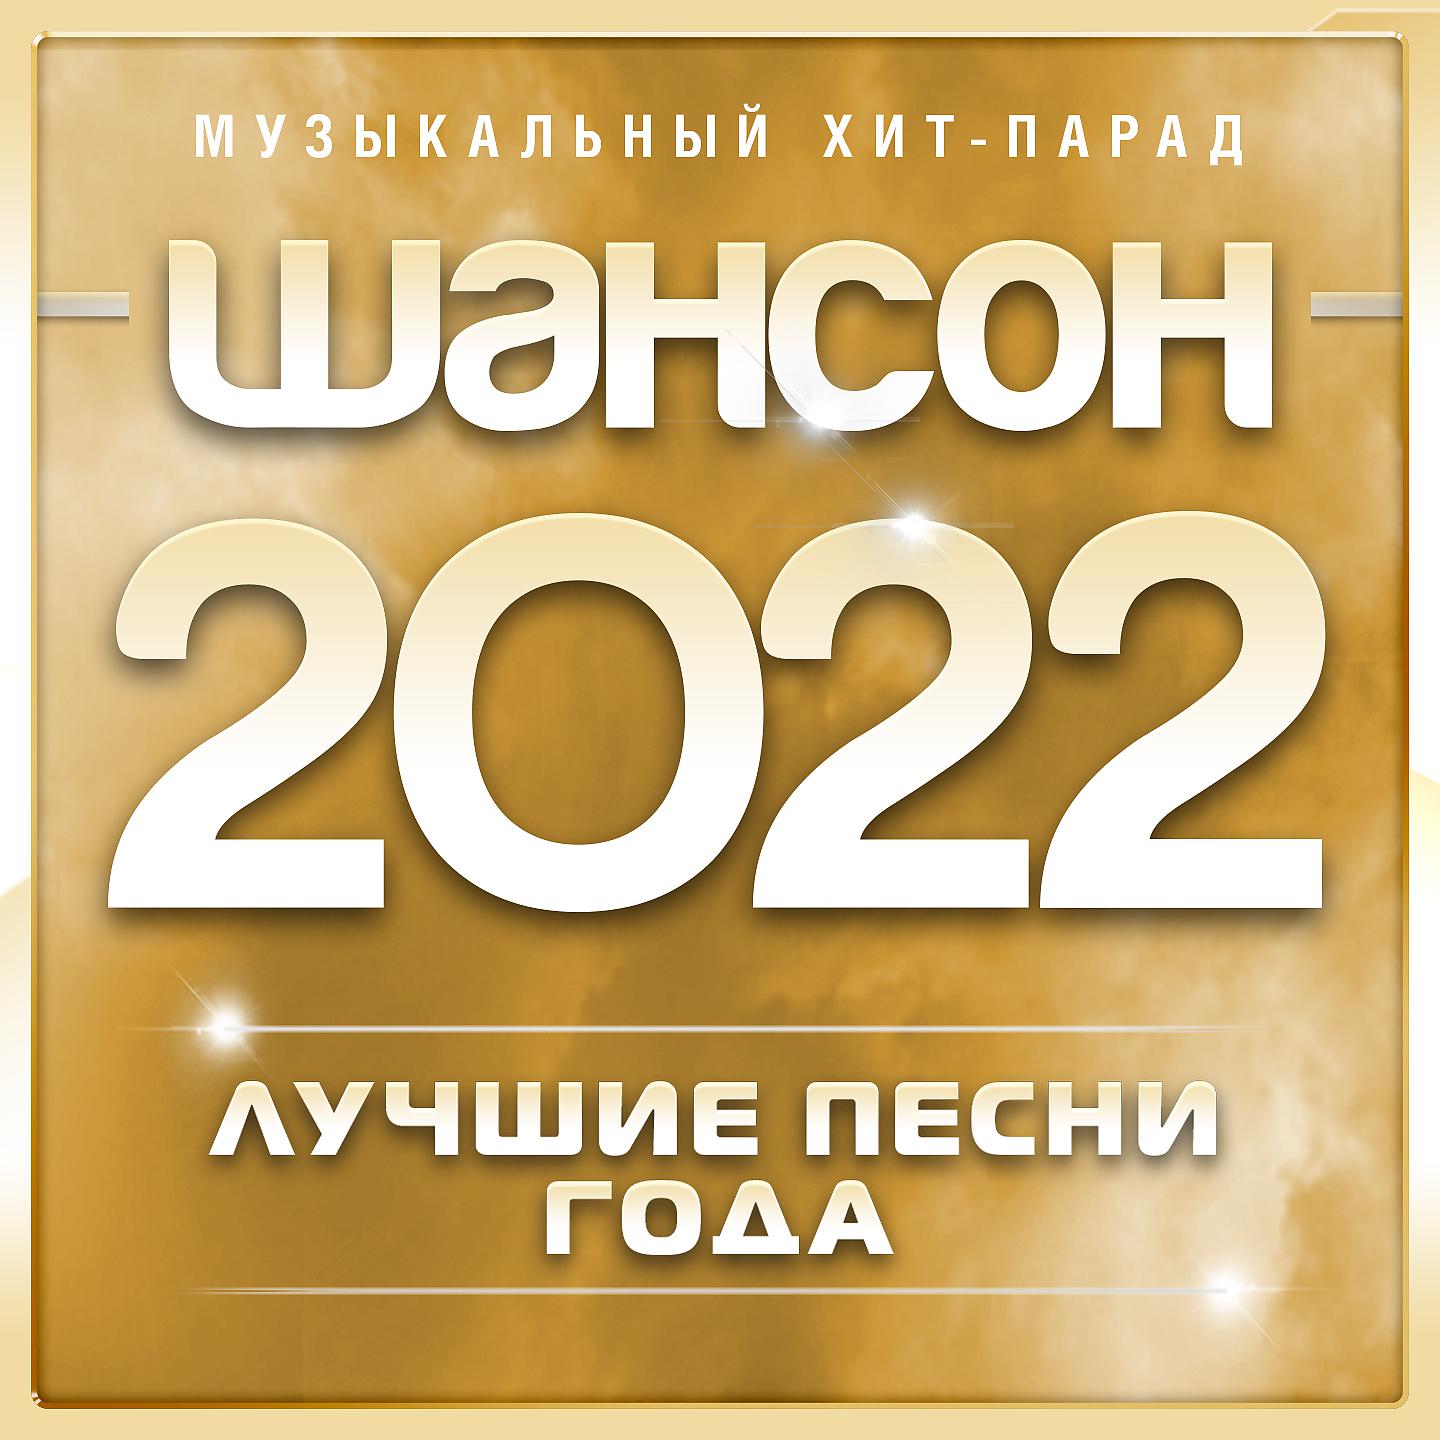 Музыка хит русский 2022 года. Шансон 2022. Шансон лучшие 2022. Шансон 2022 года (музыкальный хит-парад). Хиты шансона 2022.